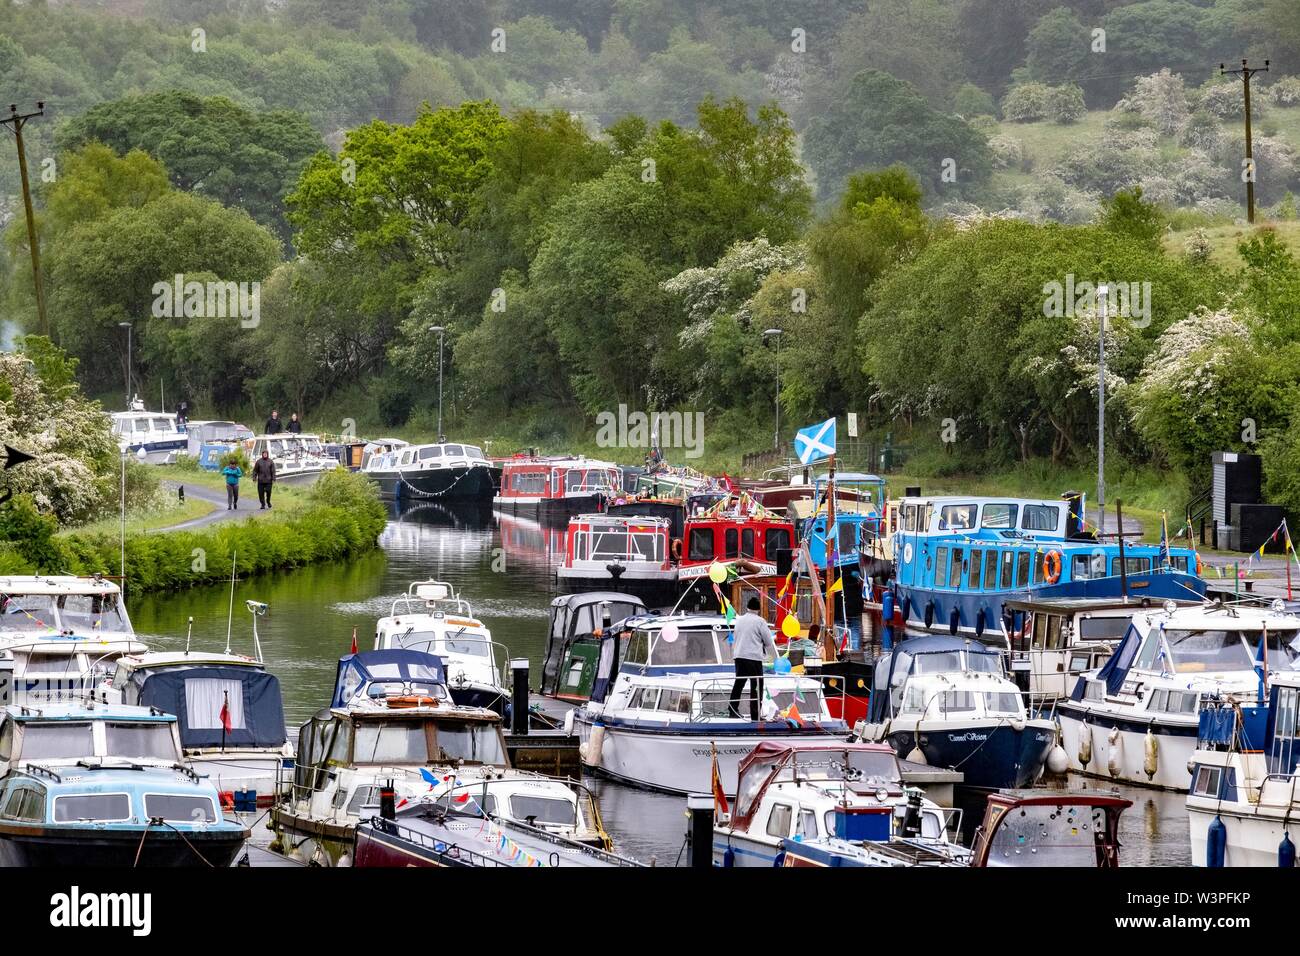 Boote, Kähne und Kanus auf Forth und Clyde Kanal Stockfoto